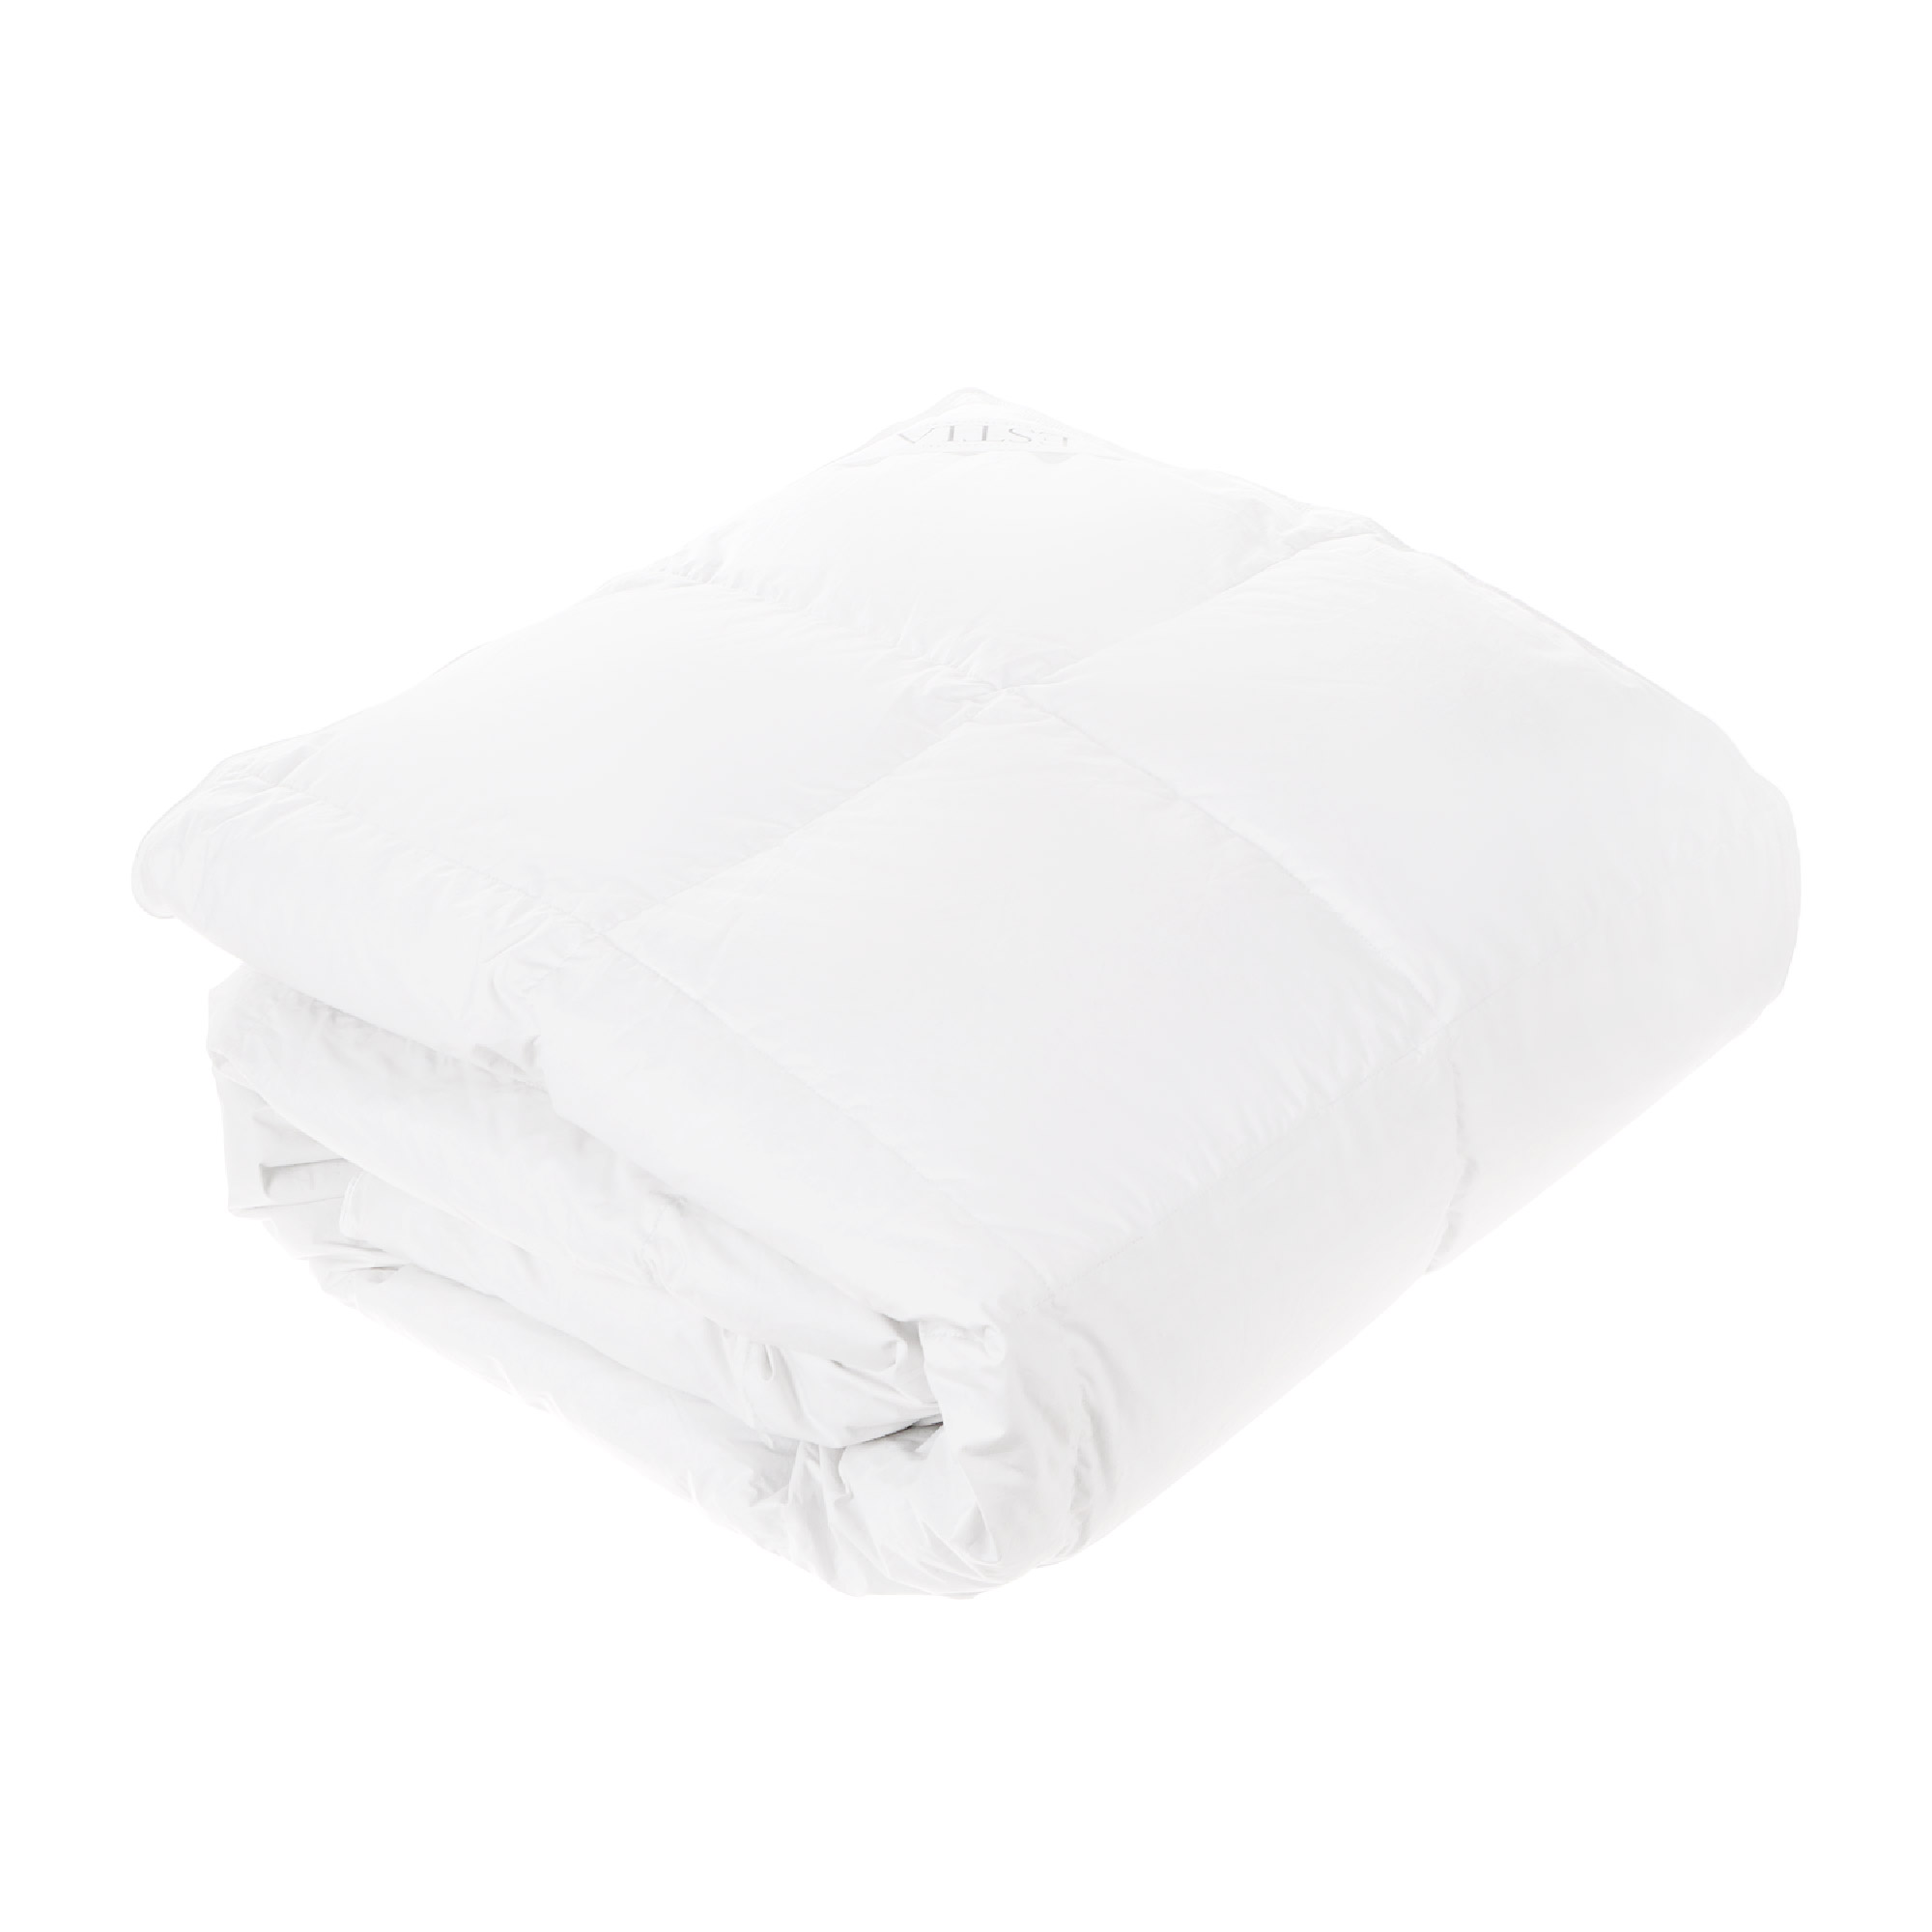 Одеяло Estia Аоста Медиум 200х210 см белое одеяло estia фальтерона легкое 200х210 см белое